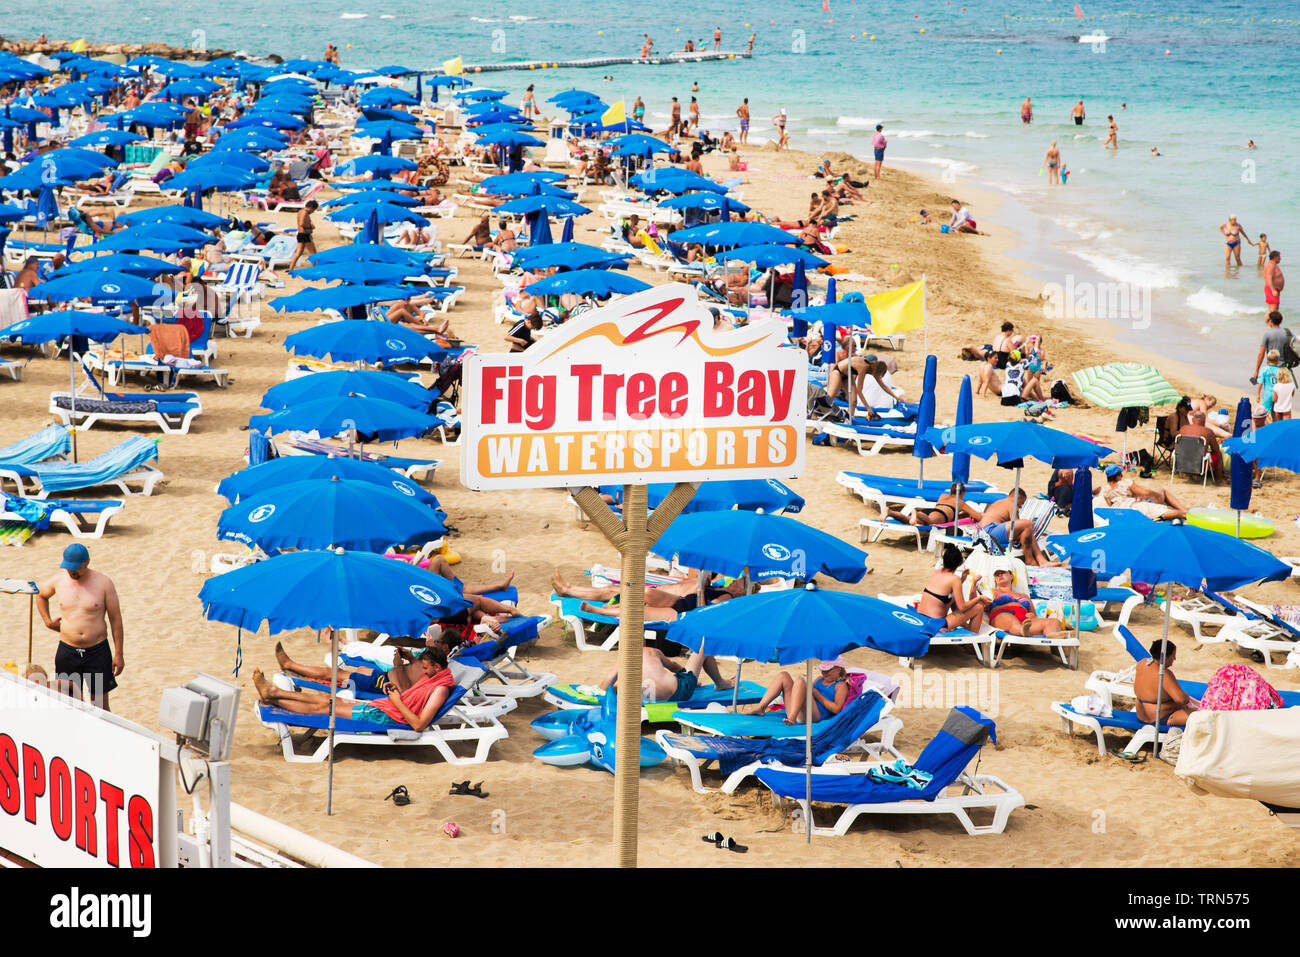 Protaras. Zypern - 5. Oktober 2018: Fig Tree Bay am Strand in Protaras Zypern. Stockfoto